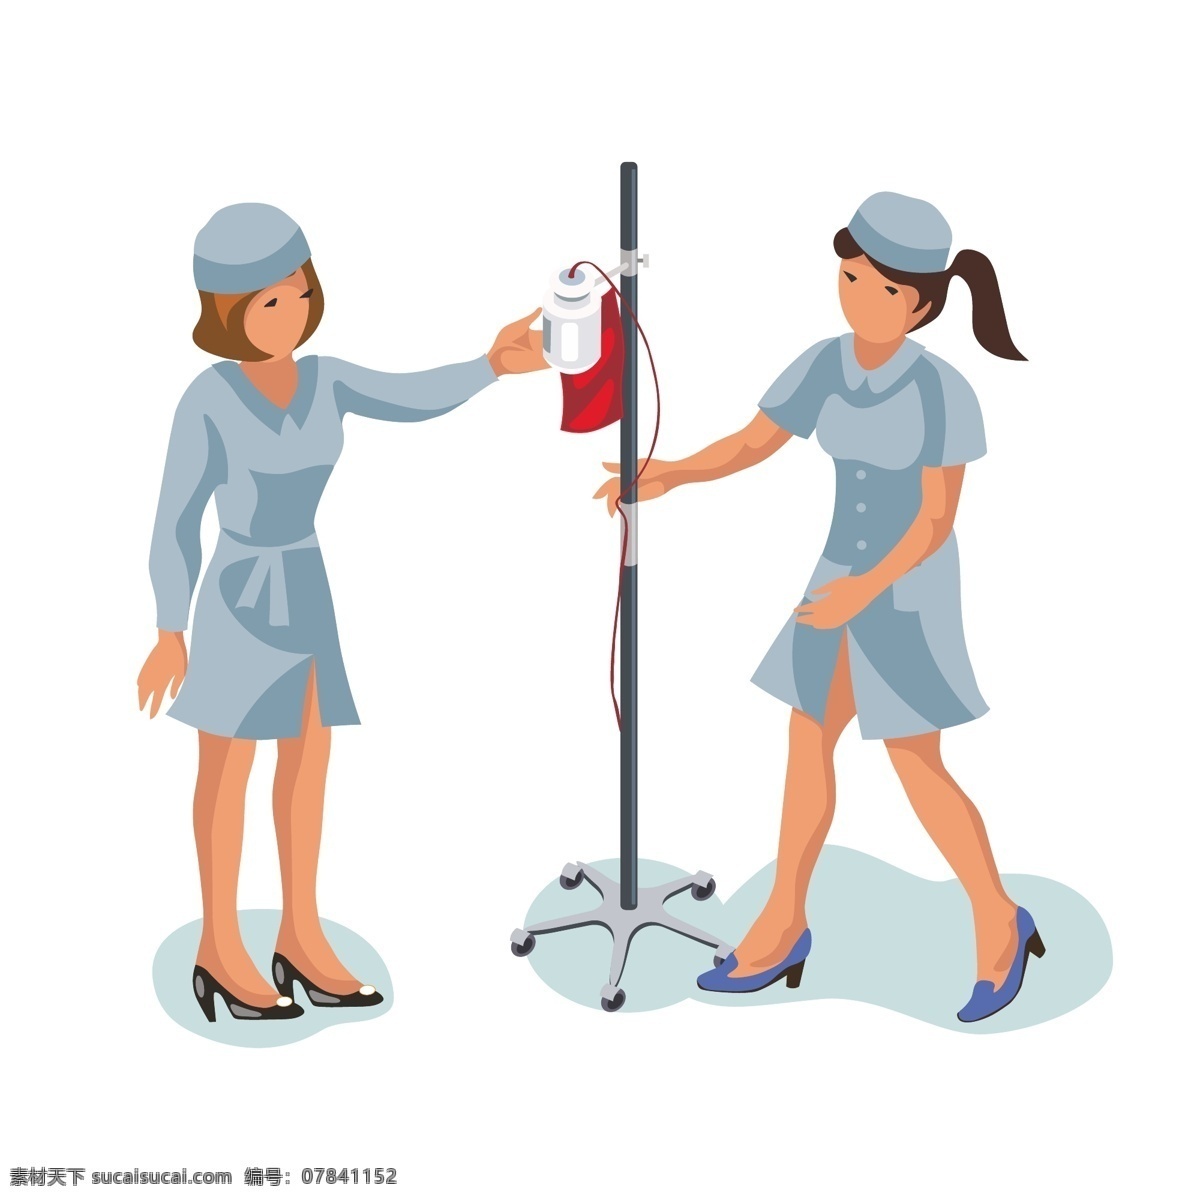 卡通 两个 上 血袋 护士 矢量 卡通护士 可爱 可爱护士 漂亮 漂亮护士 输液 输血 卡通血袋 卡通输液架